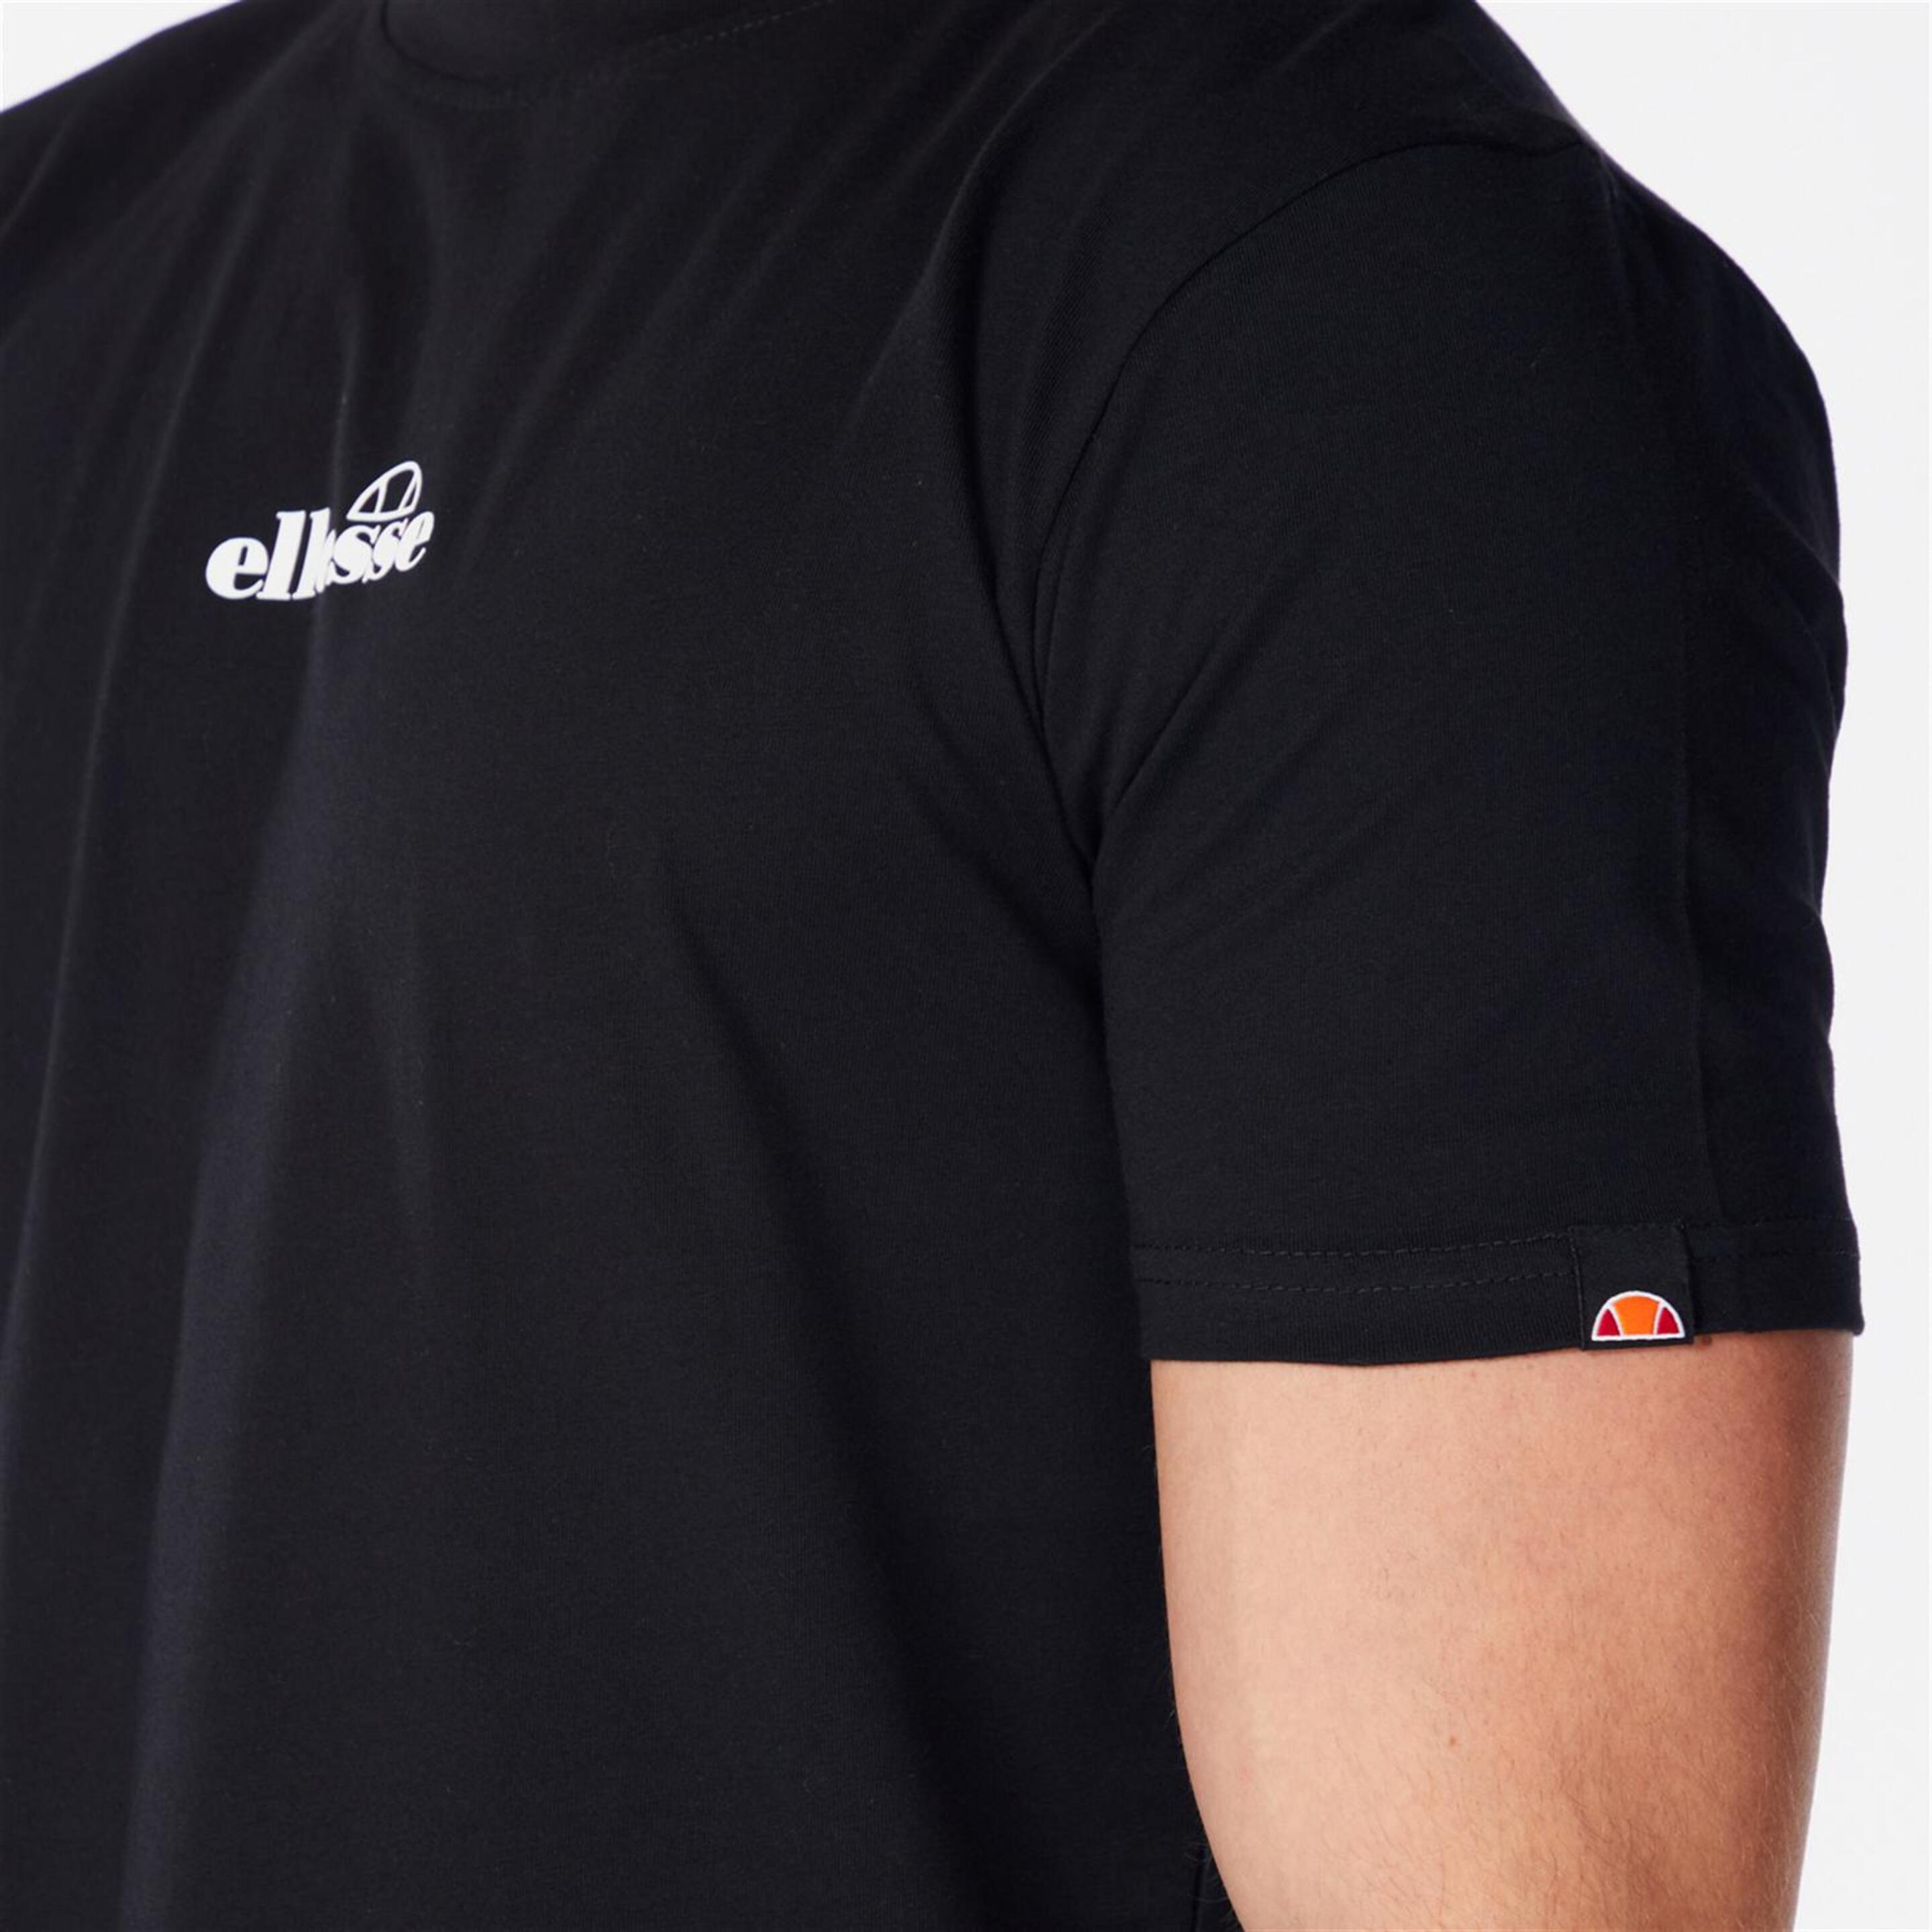 Ellesse Ollio - Negro - Camiseta Hombre